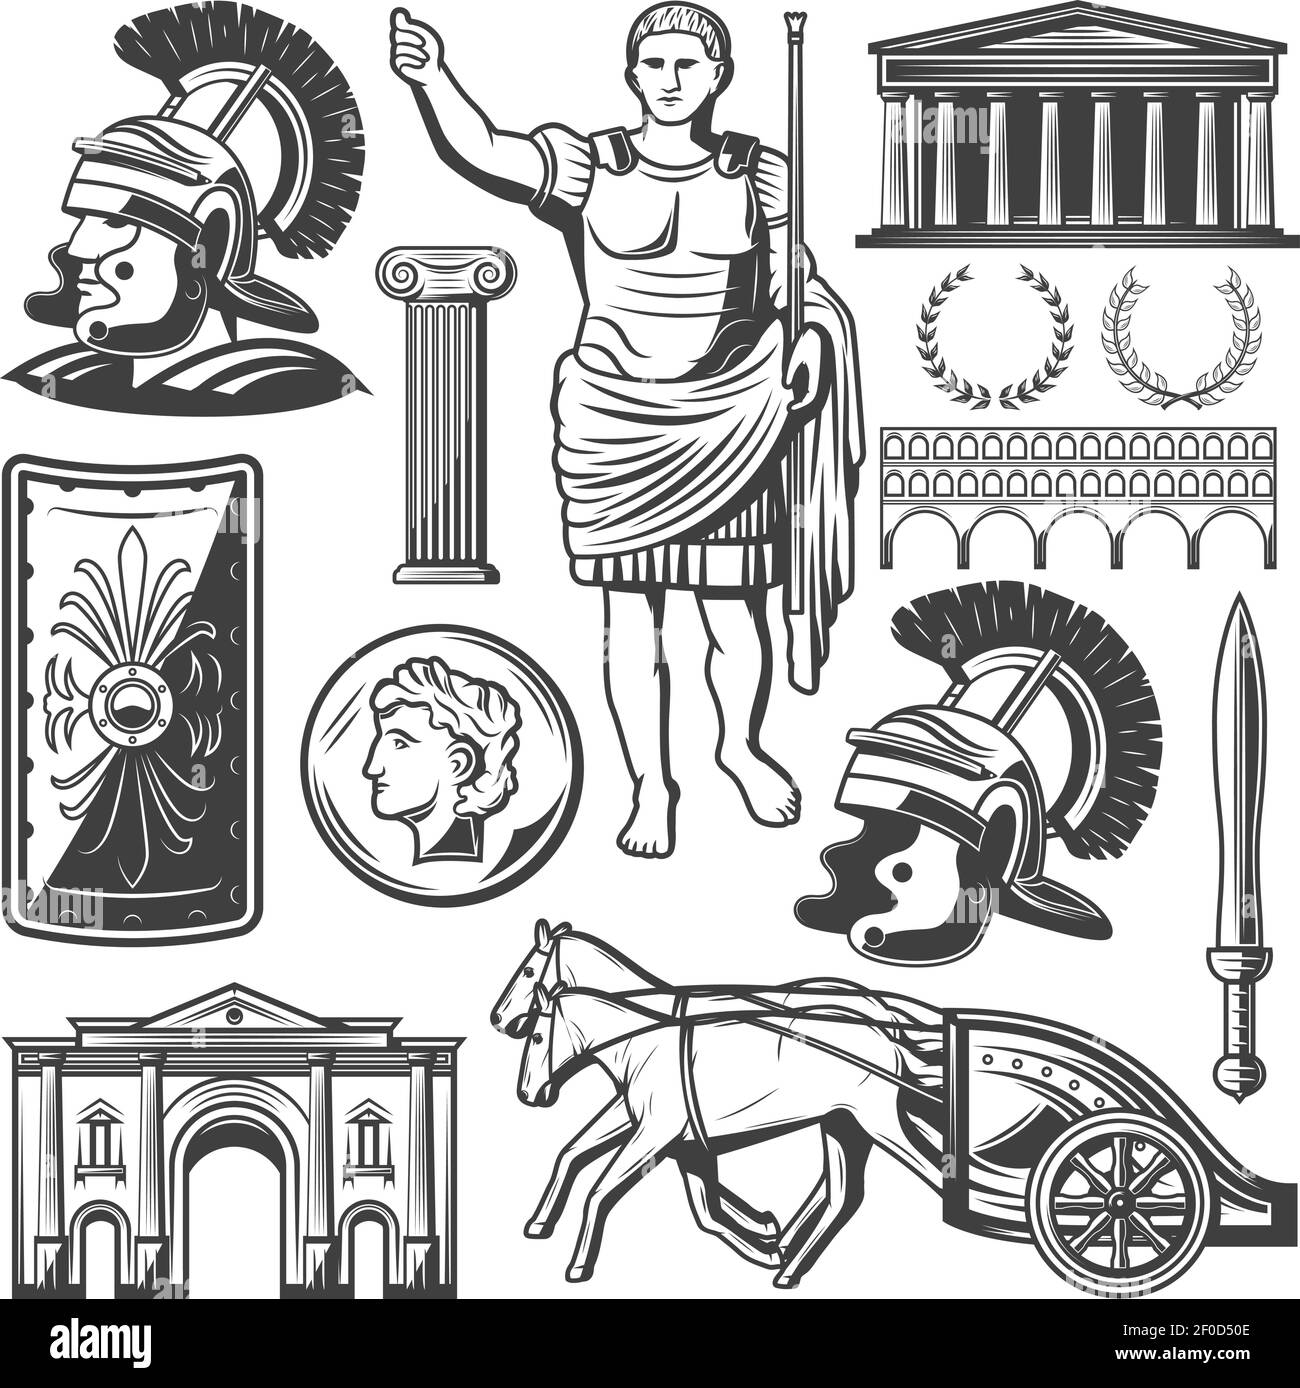 Romana imperio Imágenes vectoriales de stock - Página 2 - Alamy